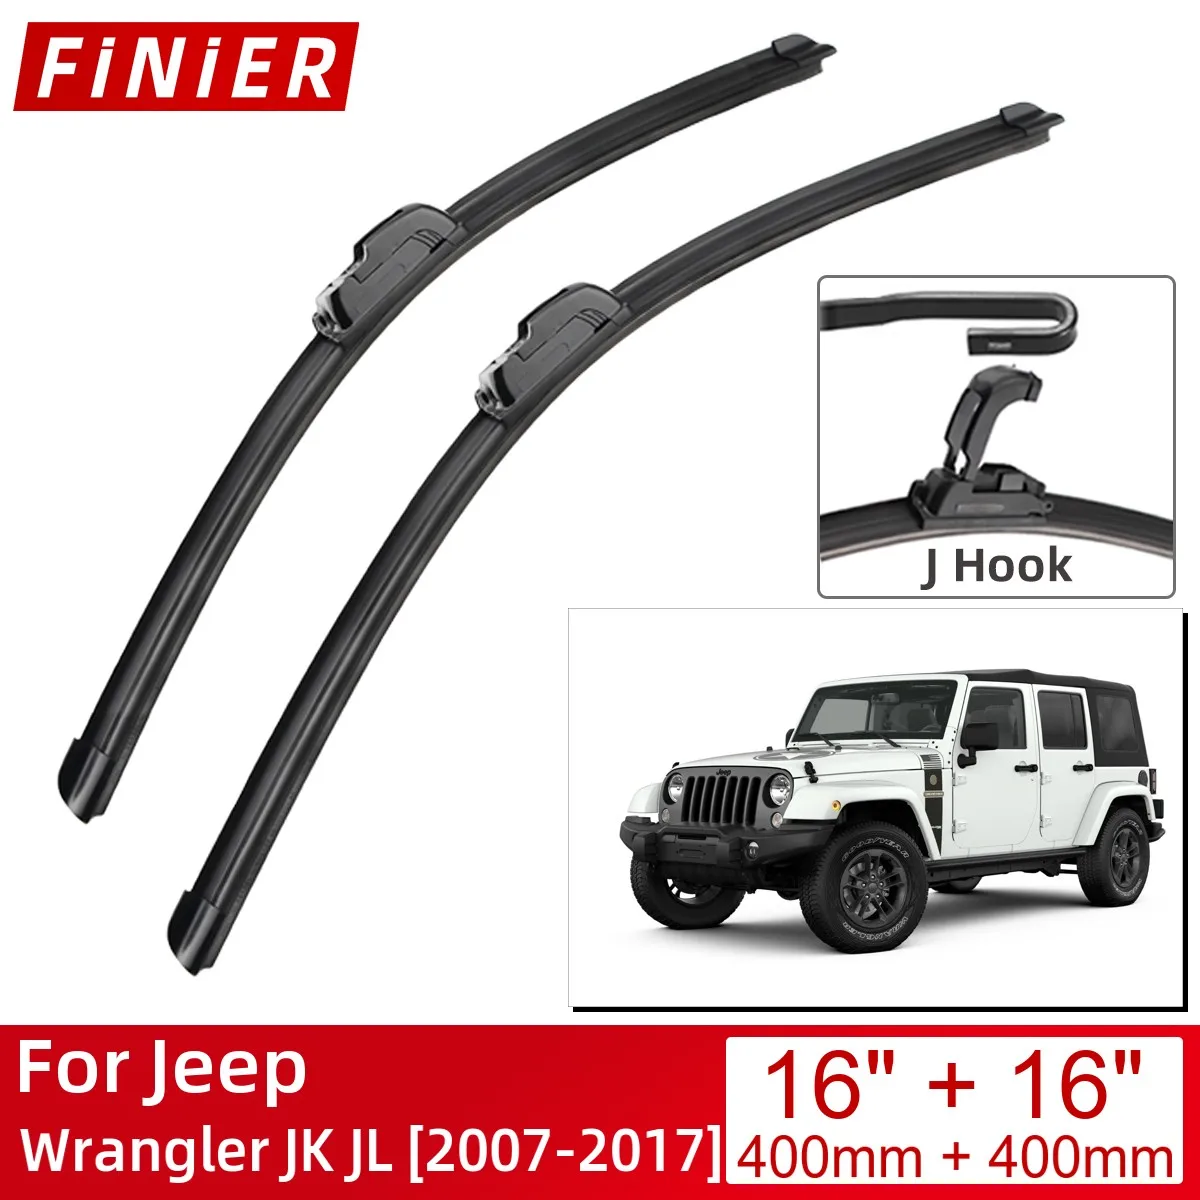 For Jeep Wrangler JK JL 2007-2017 16